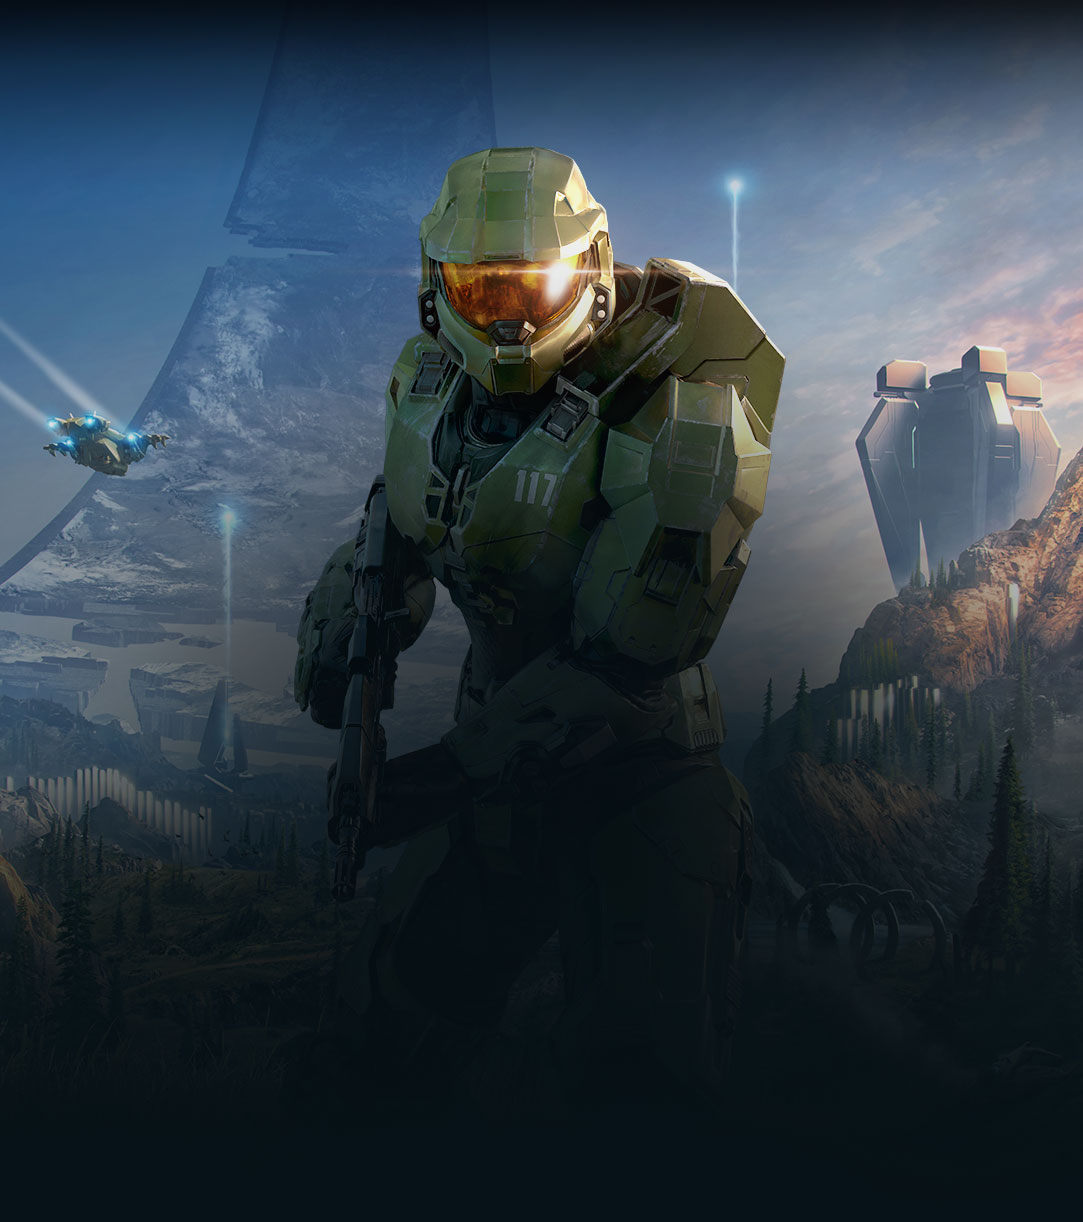 Halo Infinite, Una animación del Jefe Maestro mirando hacia adelante en un valle exuberante con un anillo de Halo roto detrás de él.